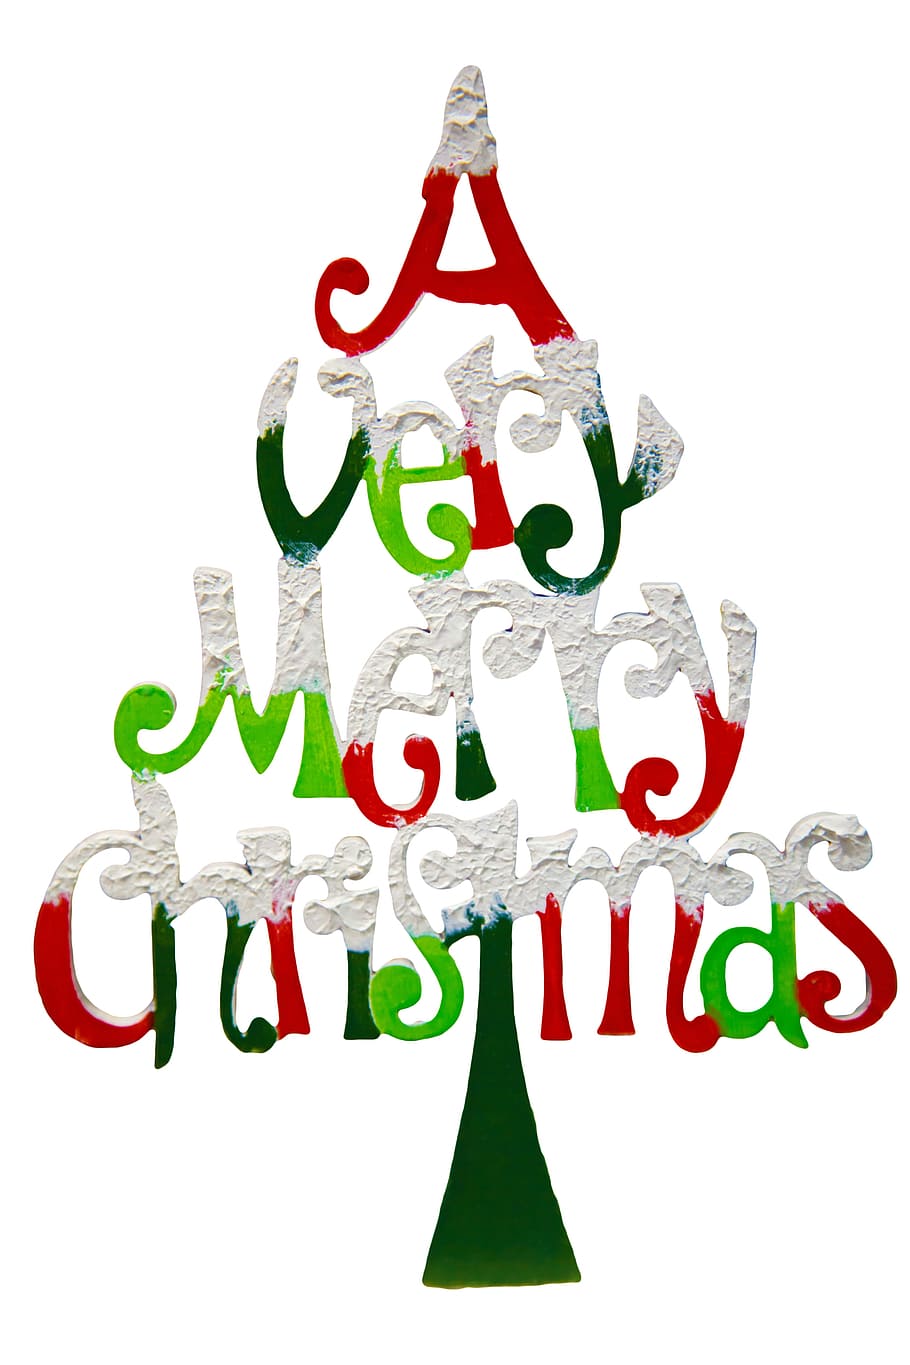 メリー, クリスマスクリップアート, 非常にメリークリスマス, クリップアート, カード, お祝い, 文字, クリスマス, デザイン, 挨拶